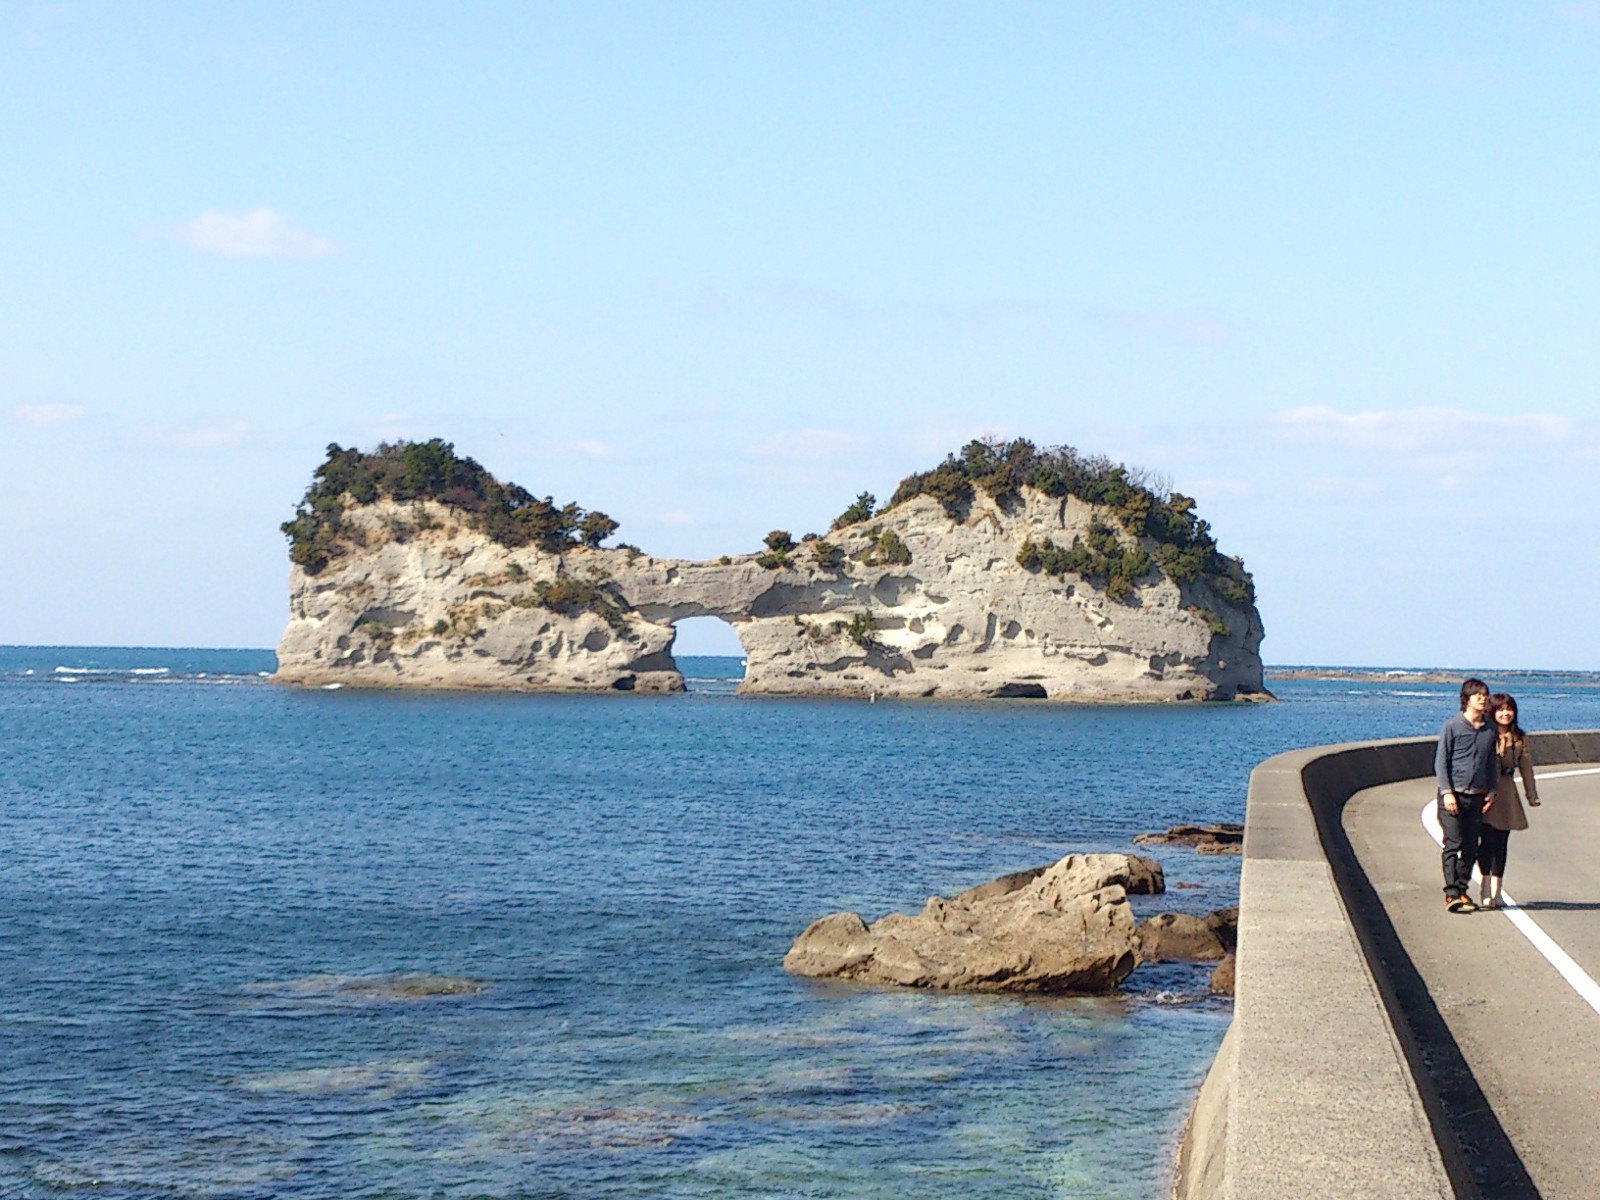 The scenic view around Shirahama Beach